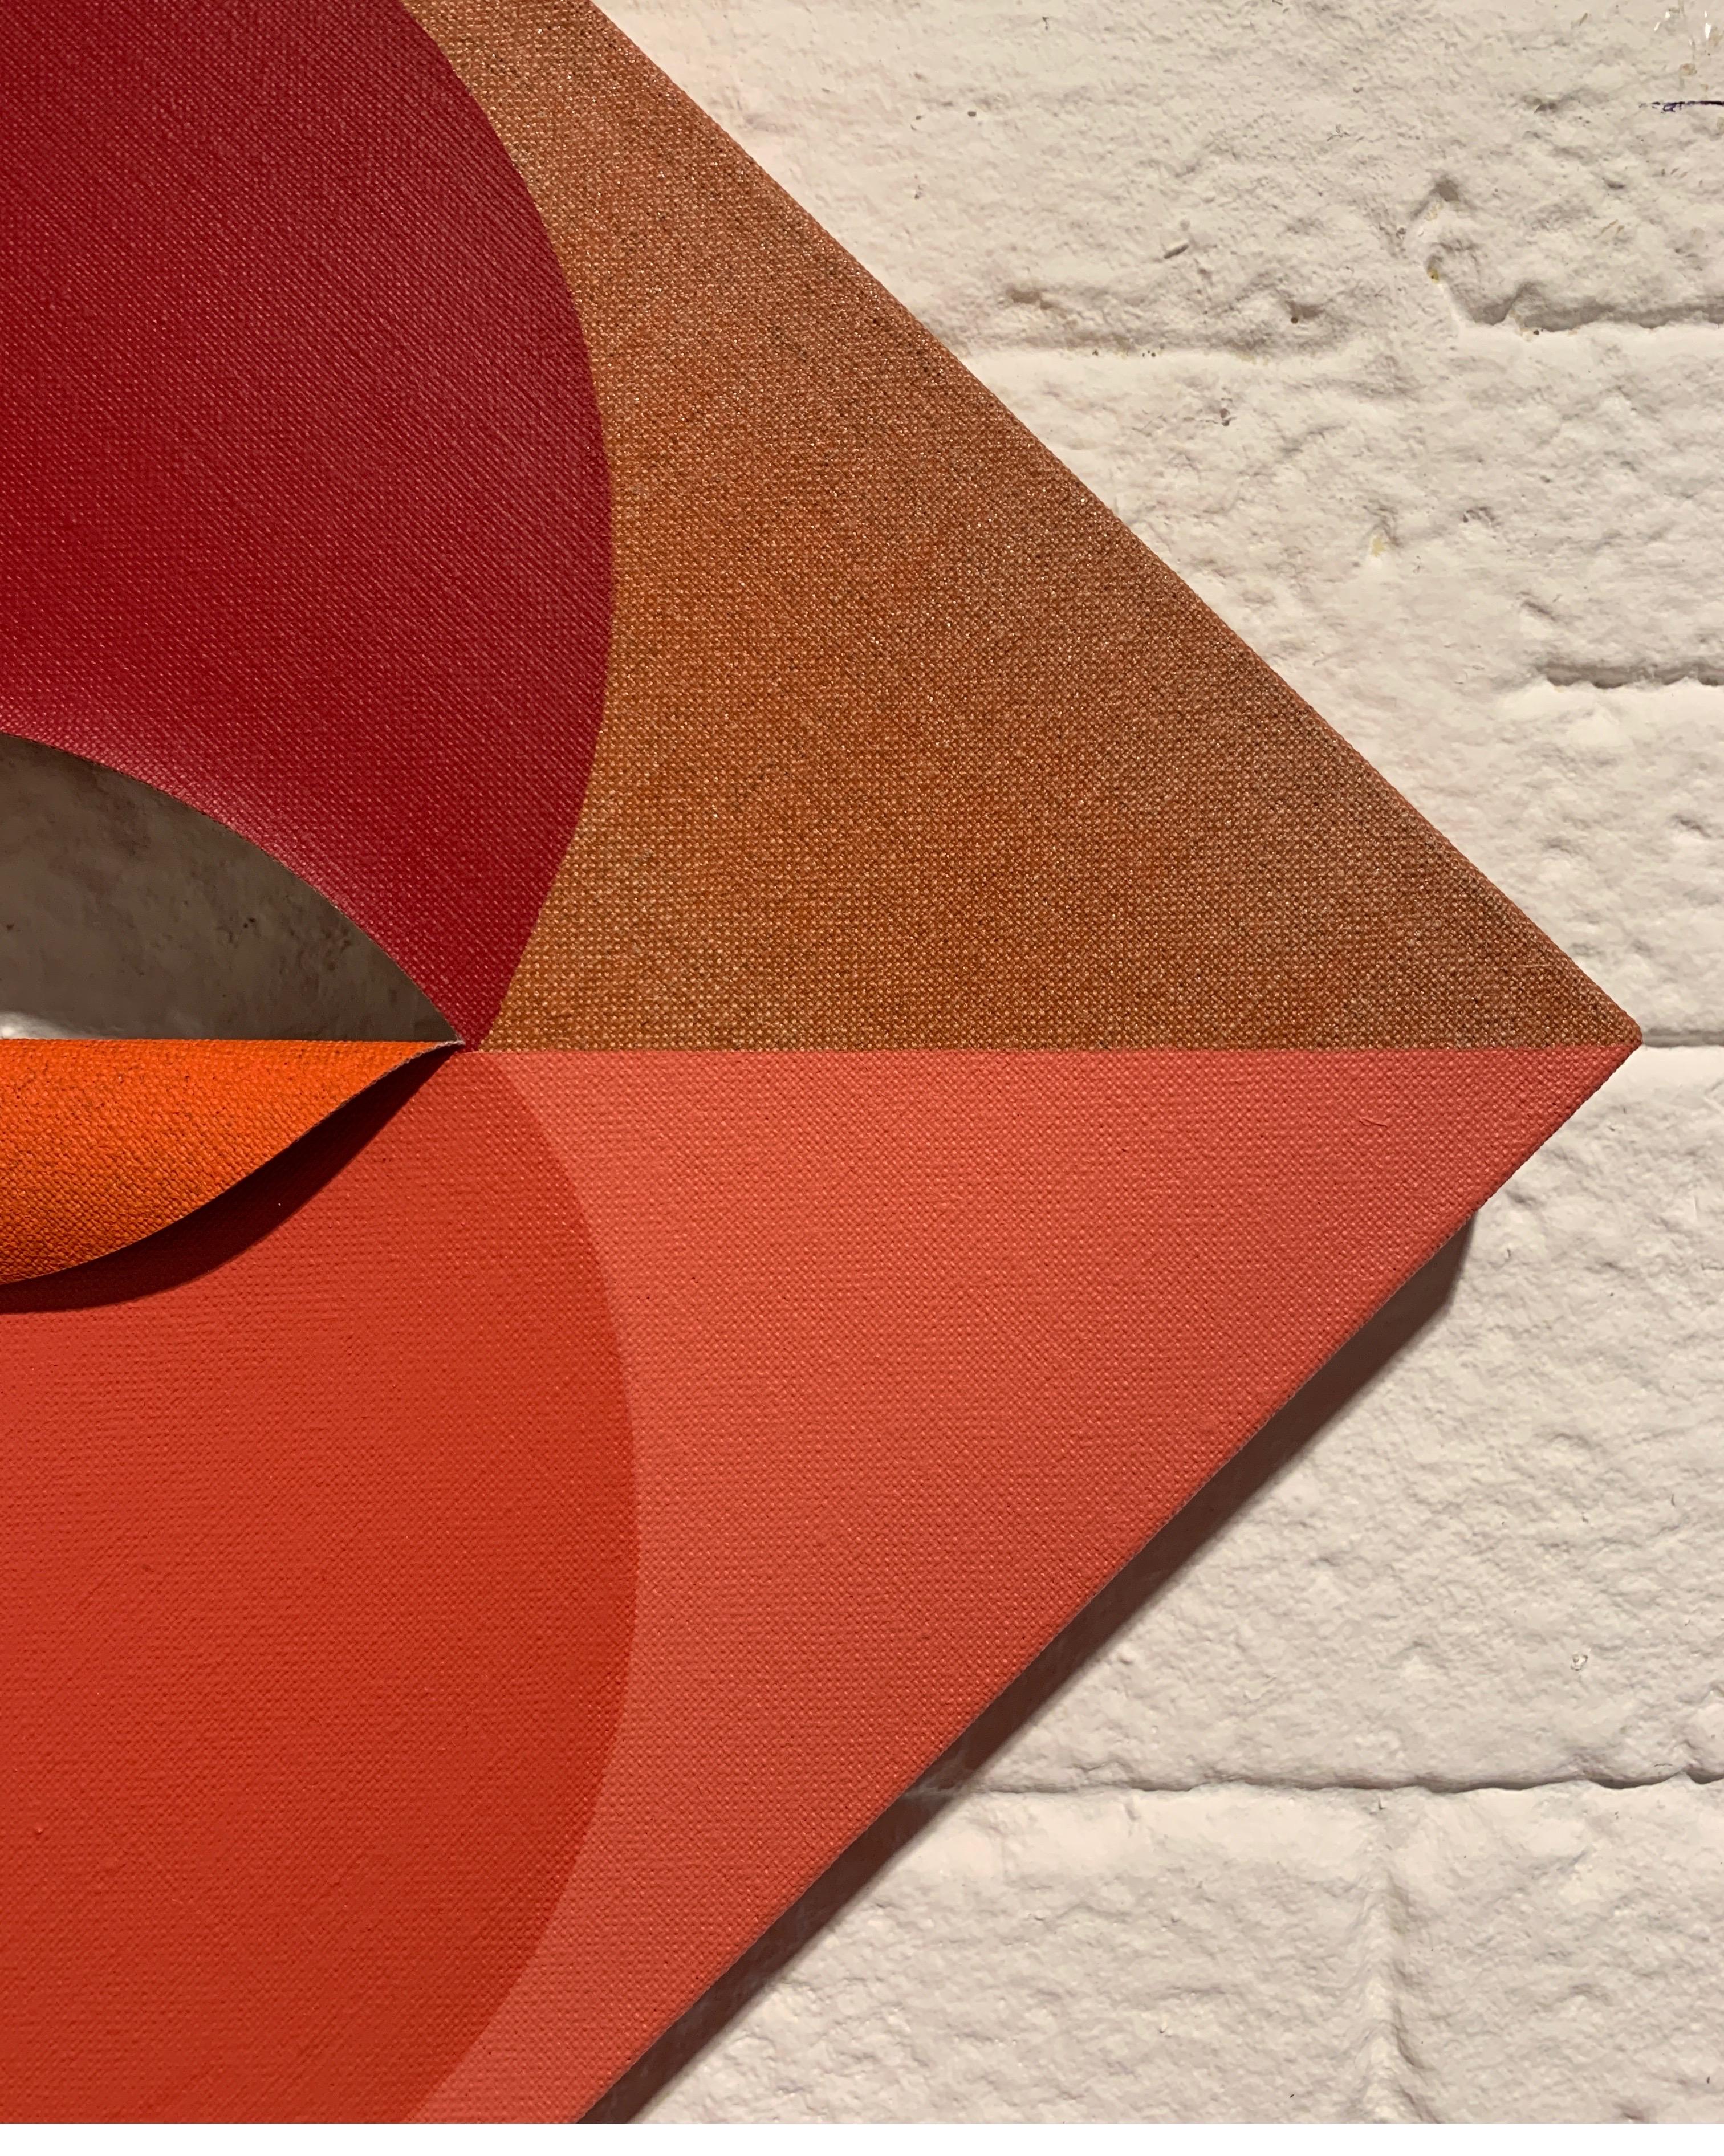 EQUIVALENCE 92- Tint et acrylique sur lin découpé - Peinture géométrique abstraite rouge - Géométrique abstrait Painting par Linda King Ferguson